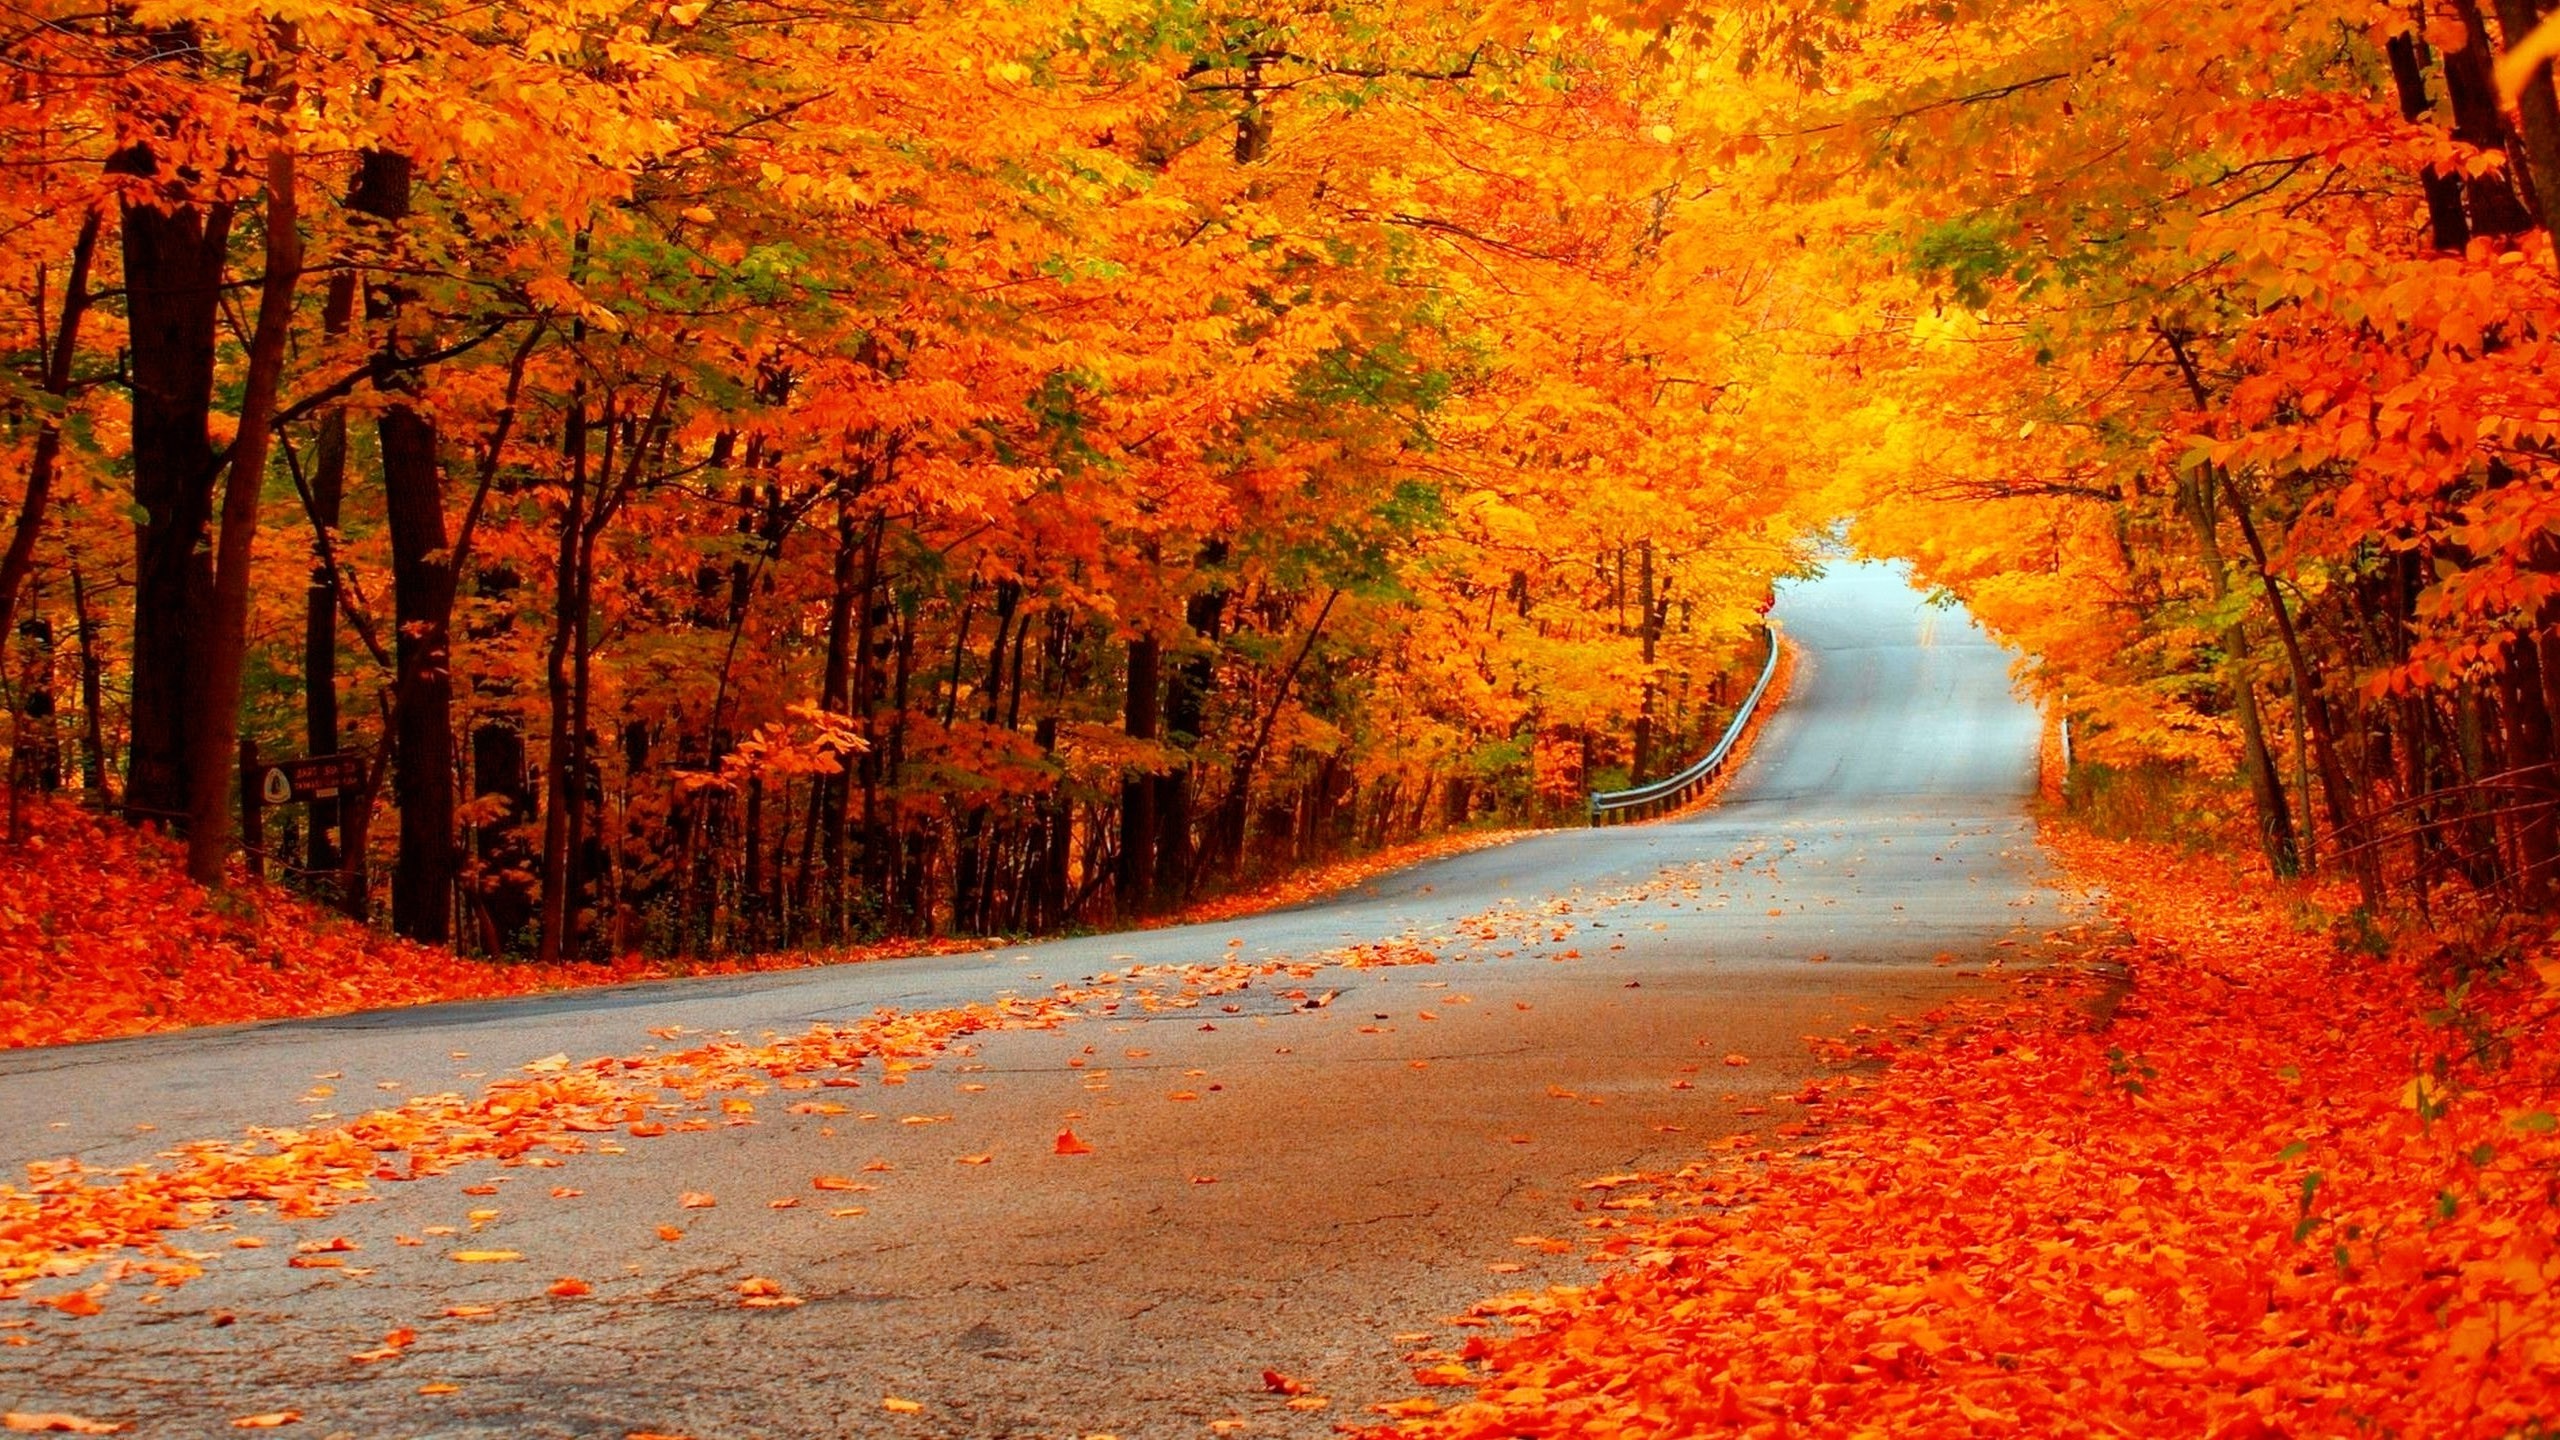 Bạn đã sẵn sàng đắm chìm vào mùa thu với những cánh cây đang bừng lên sắc vàng đỏ rực rỡ? Những hình ảnh mùa thu tuyệt đẹp sẽ mang lại cho bạn niềm vui và bình yên tuyệt vời.